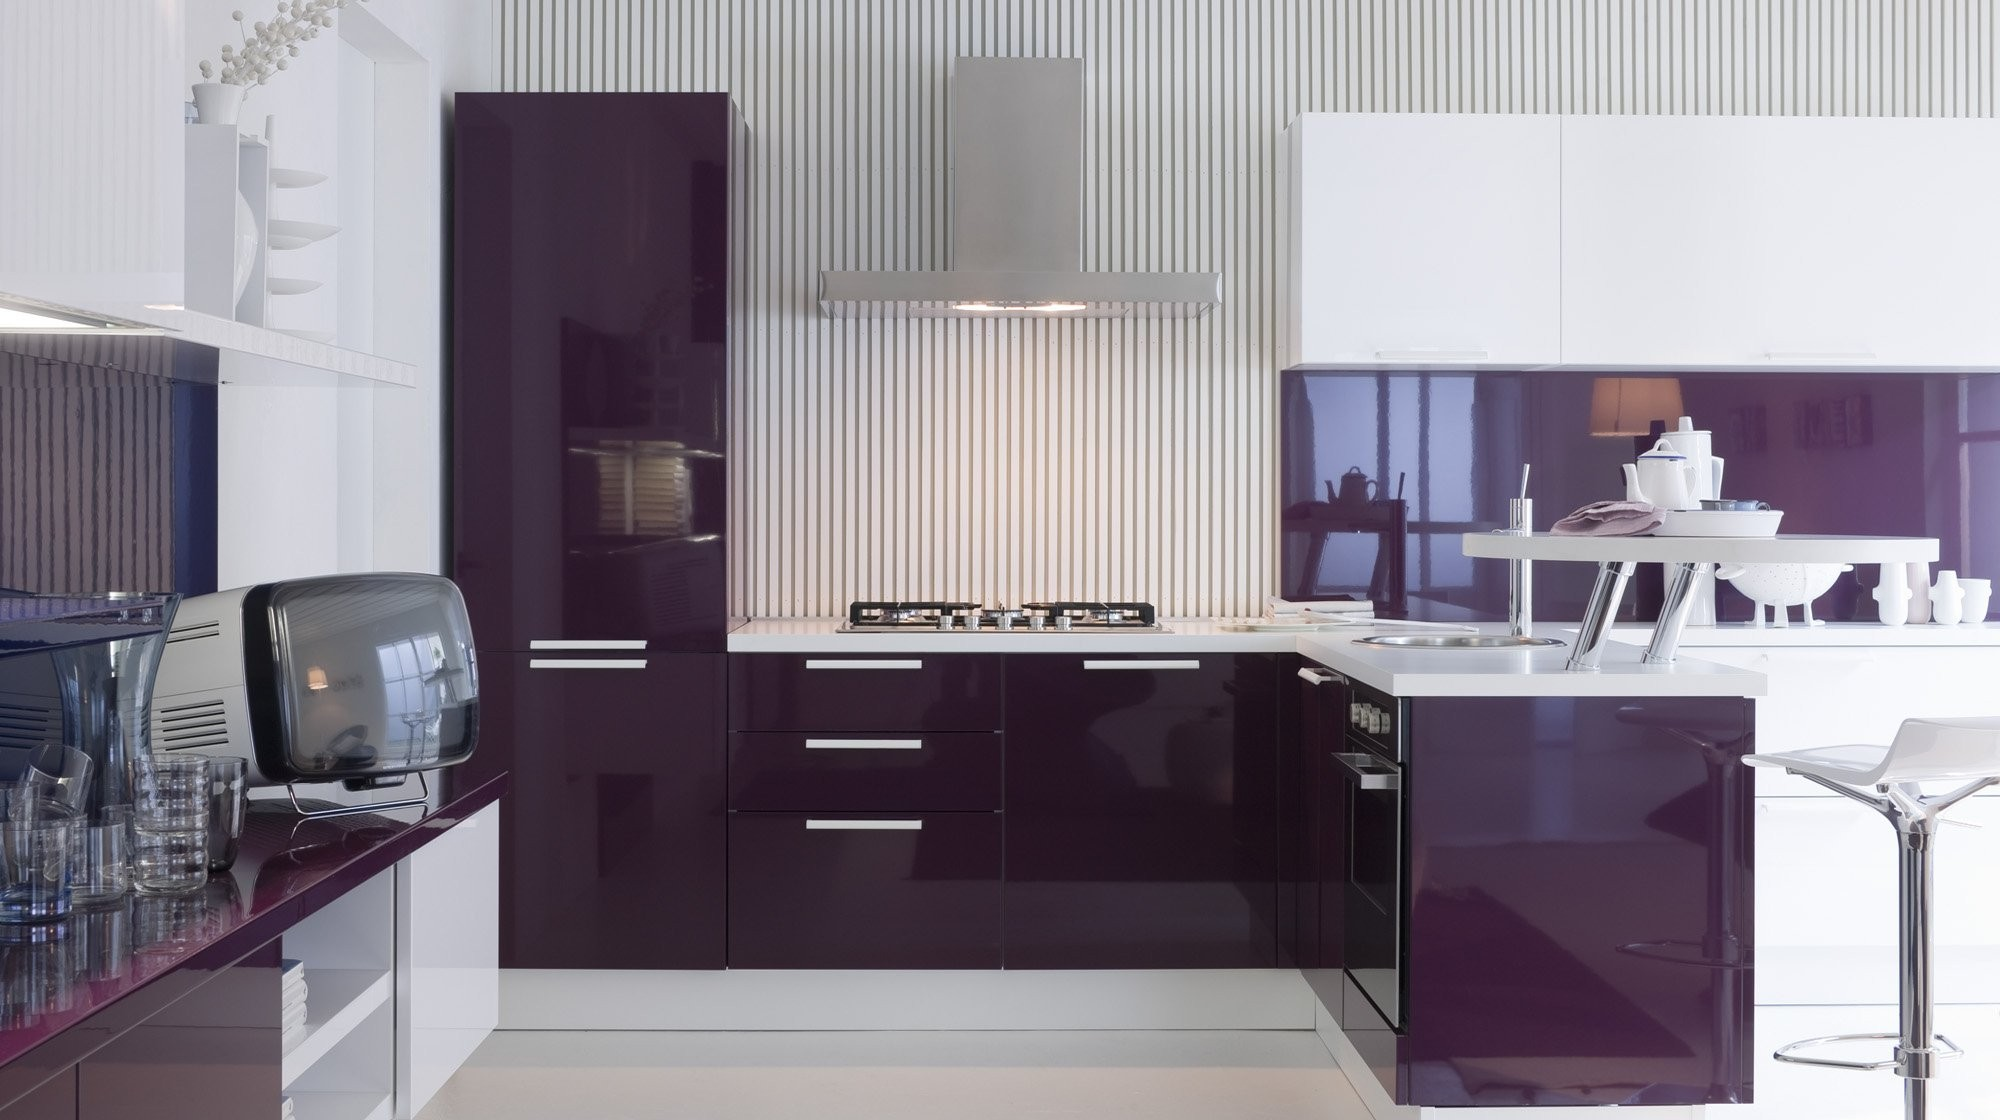 Der violette Farbton findet sich häufiger in modernen Küchen, die sich durch glänzende Oberflächen und satte tiefe Farben auszeichnen.